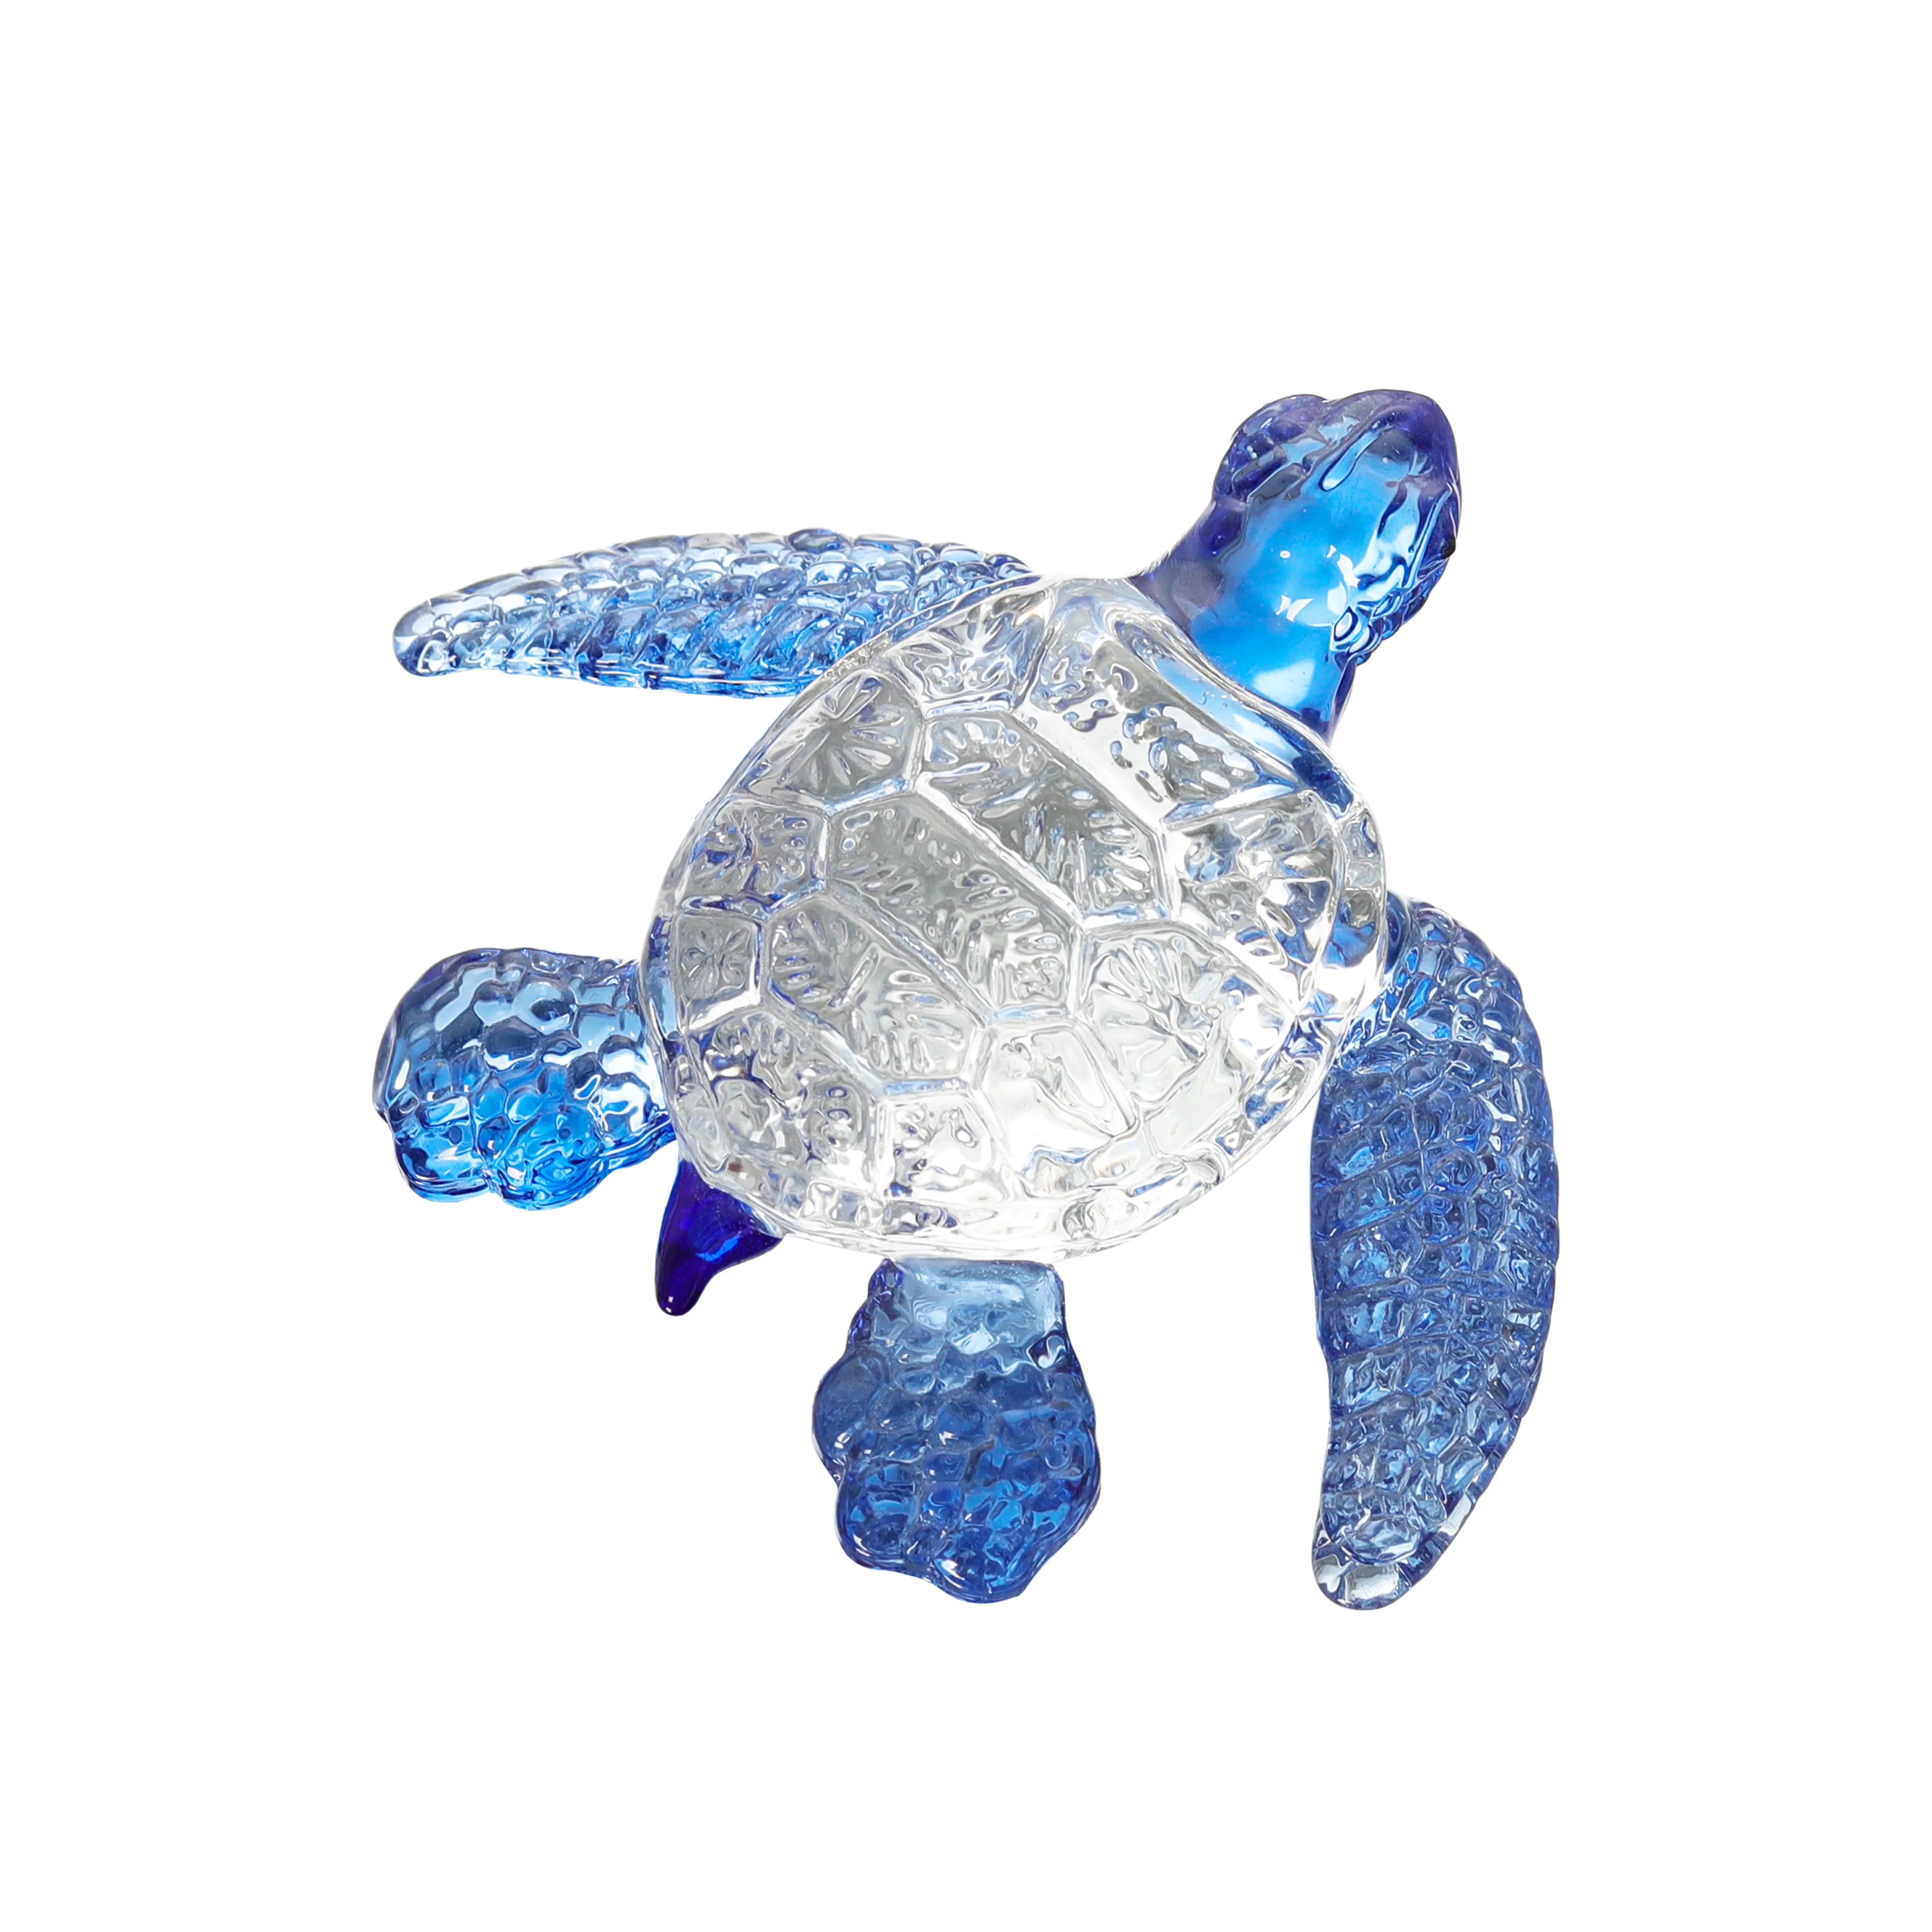 Figurina di tartaruga marina di cristallo di vetro a mano ornamento di animali marini per la decorazione domestica regali di compleanno fermacarte